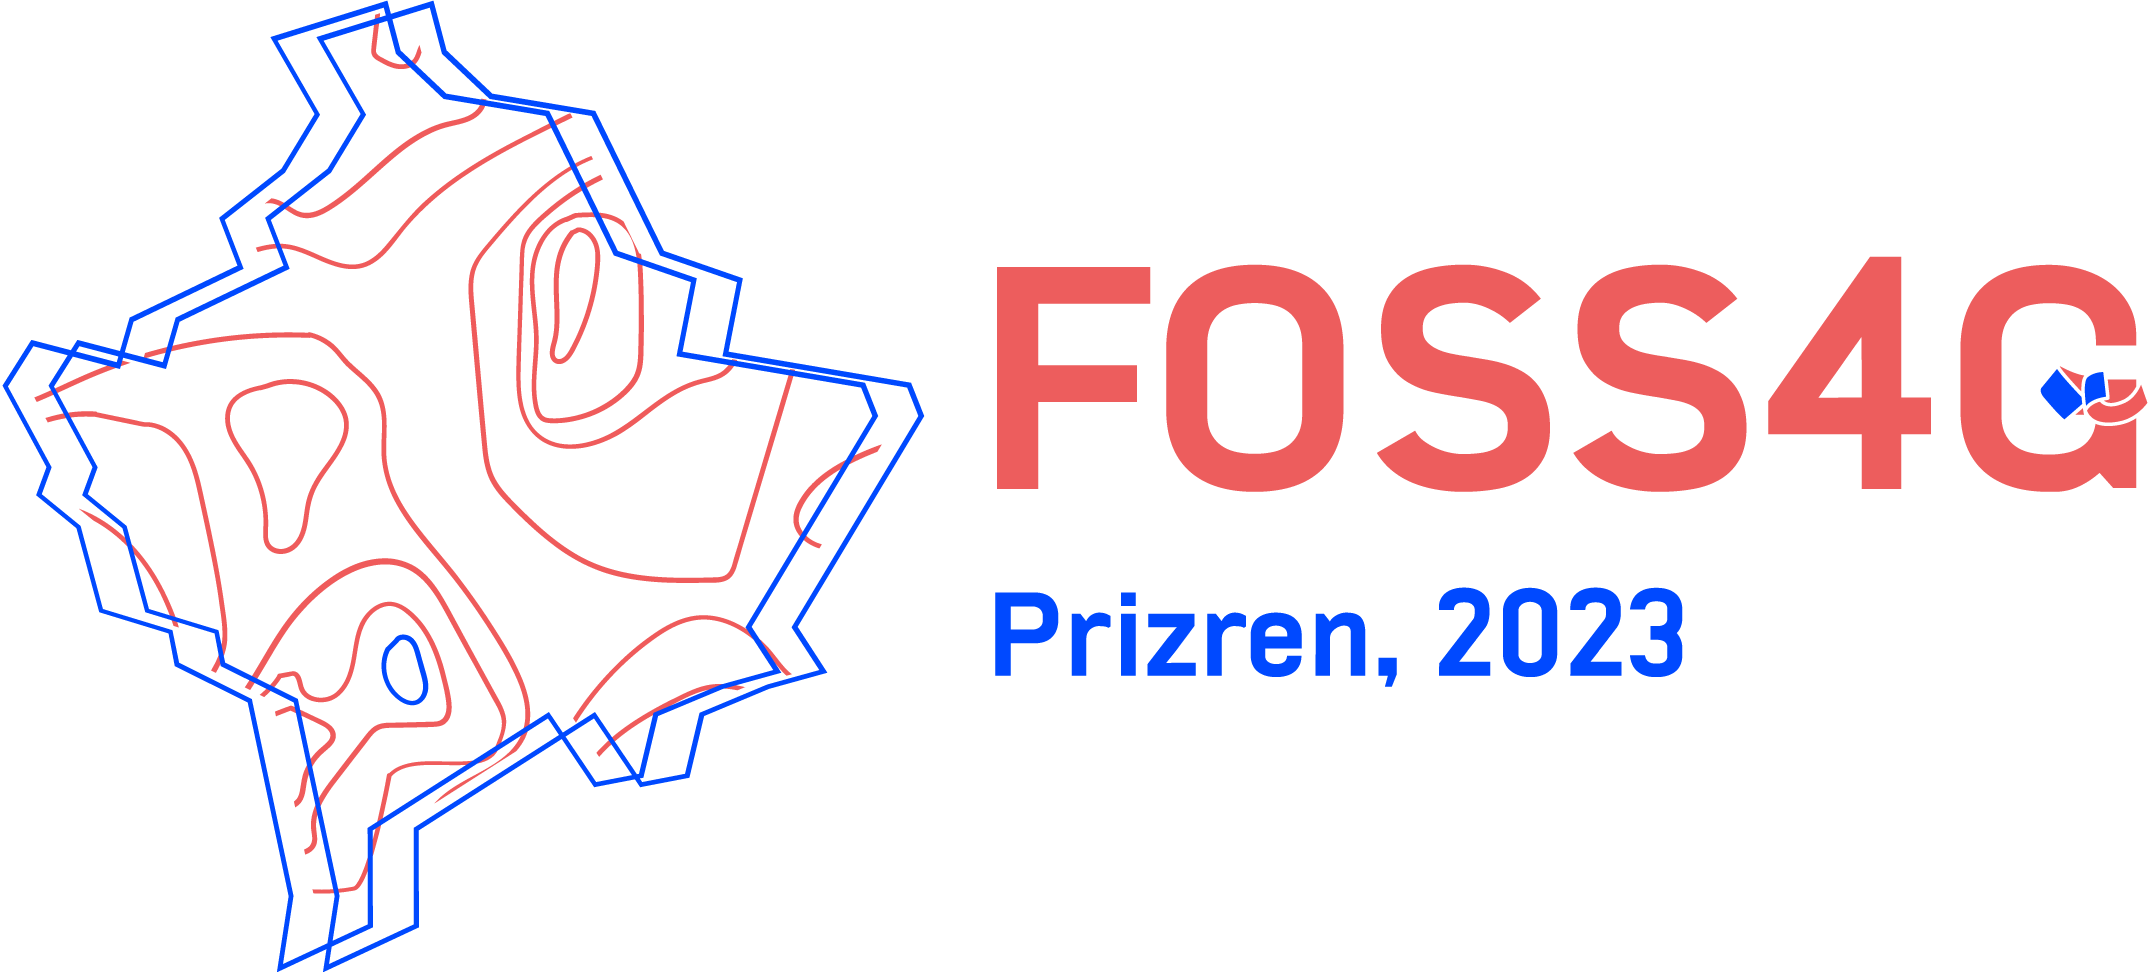 FOSS4G 2023 Florence